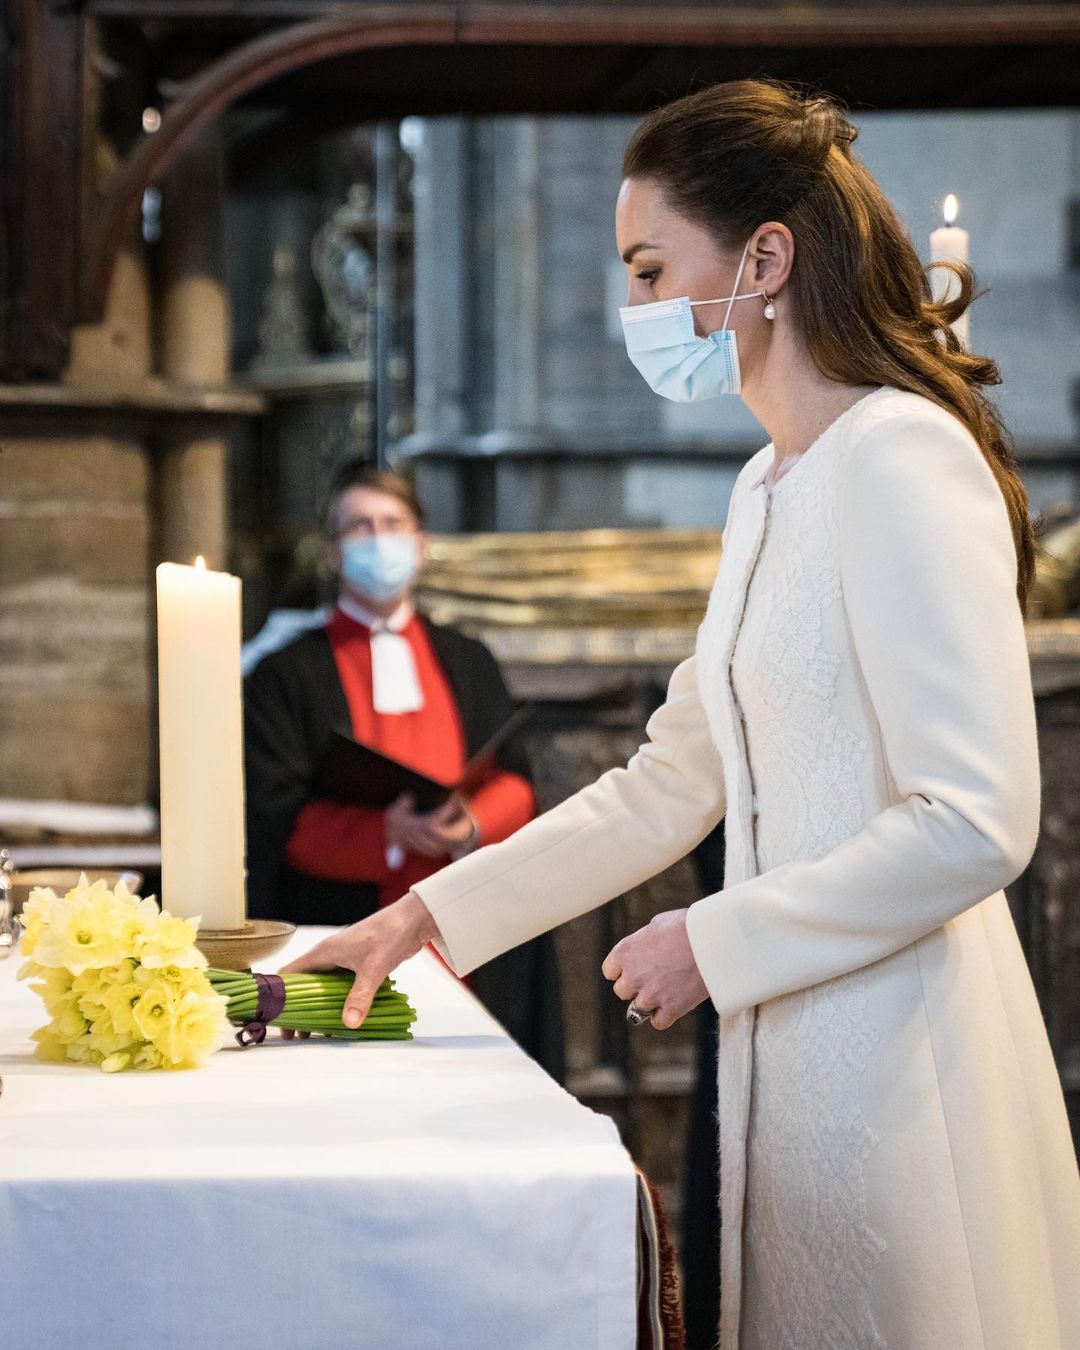 Словно невеста: Кейт Миддлтон в роскошном кружевном пальто посетила место своей свадьбы